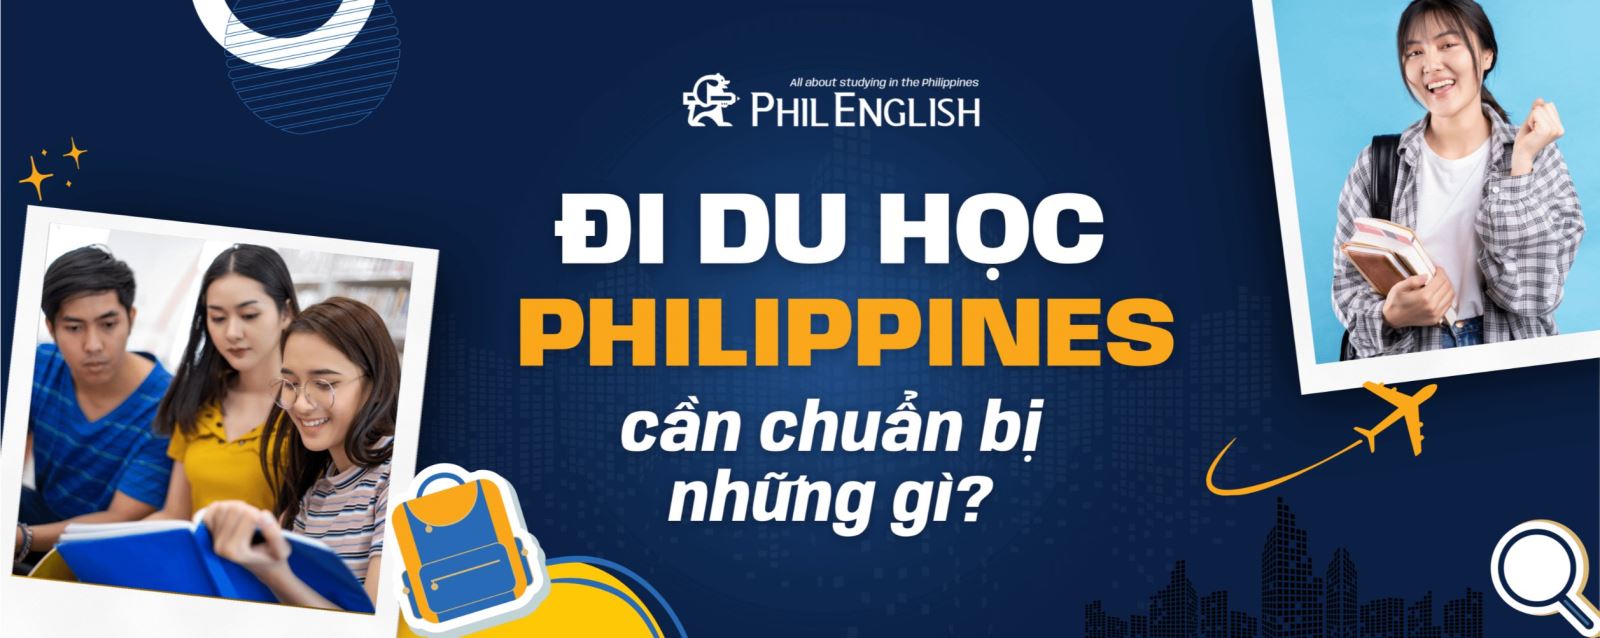 Khi đi du học Philippines cần chuẩn bị những gì?